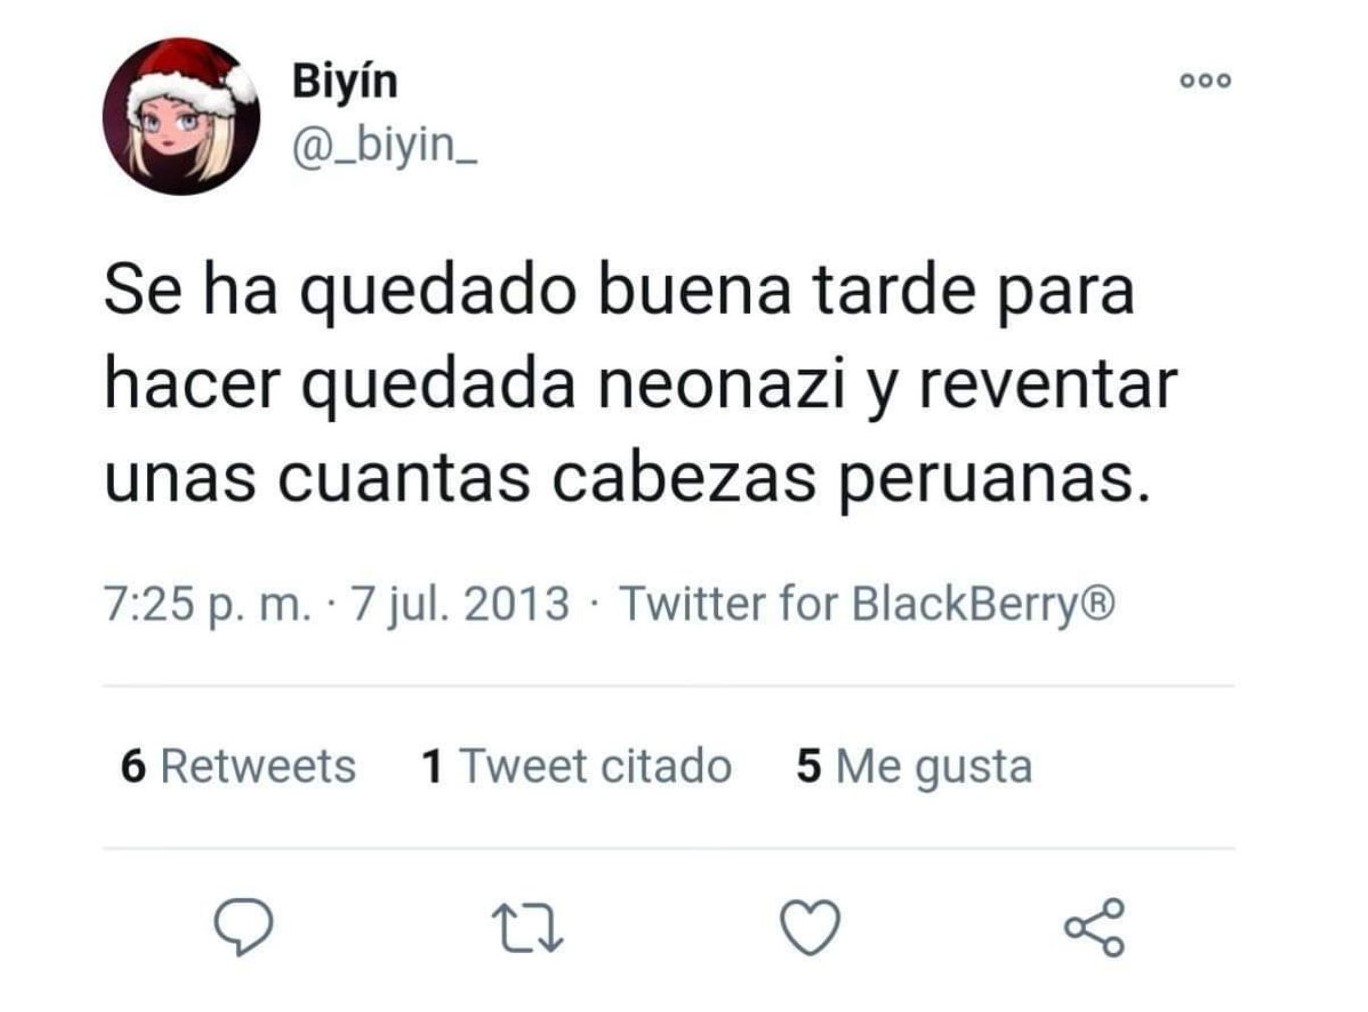 Biyín envuelta en polémica por tuits del pasado.